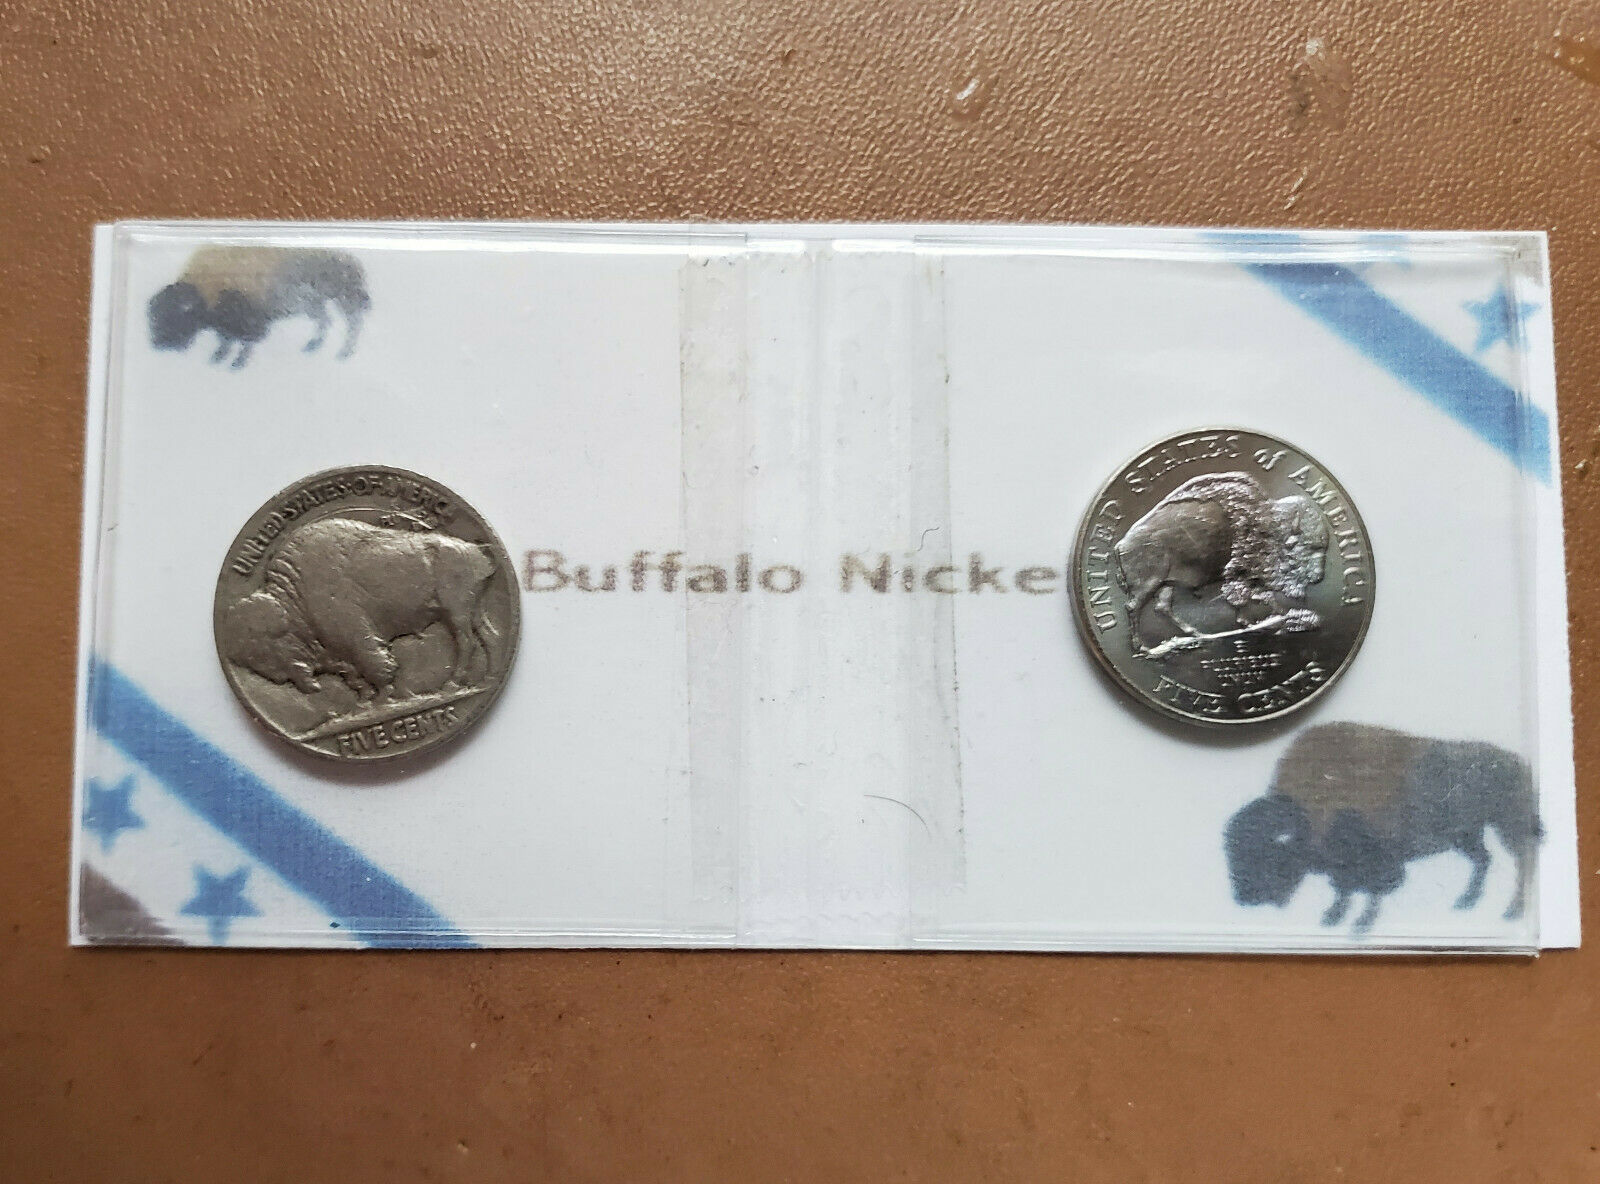 Two Varieties of Buffalo Nickels - $2.99